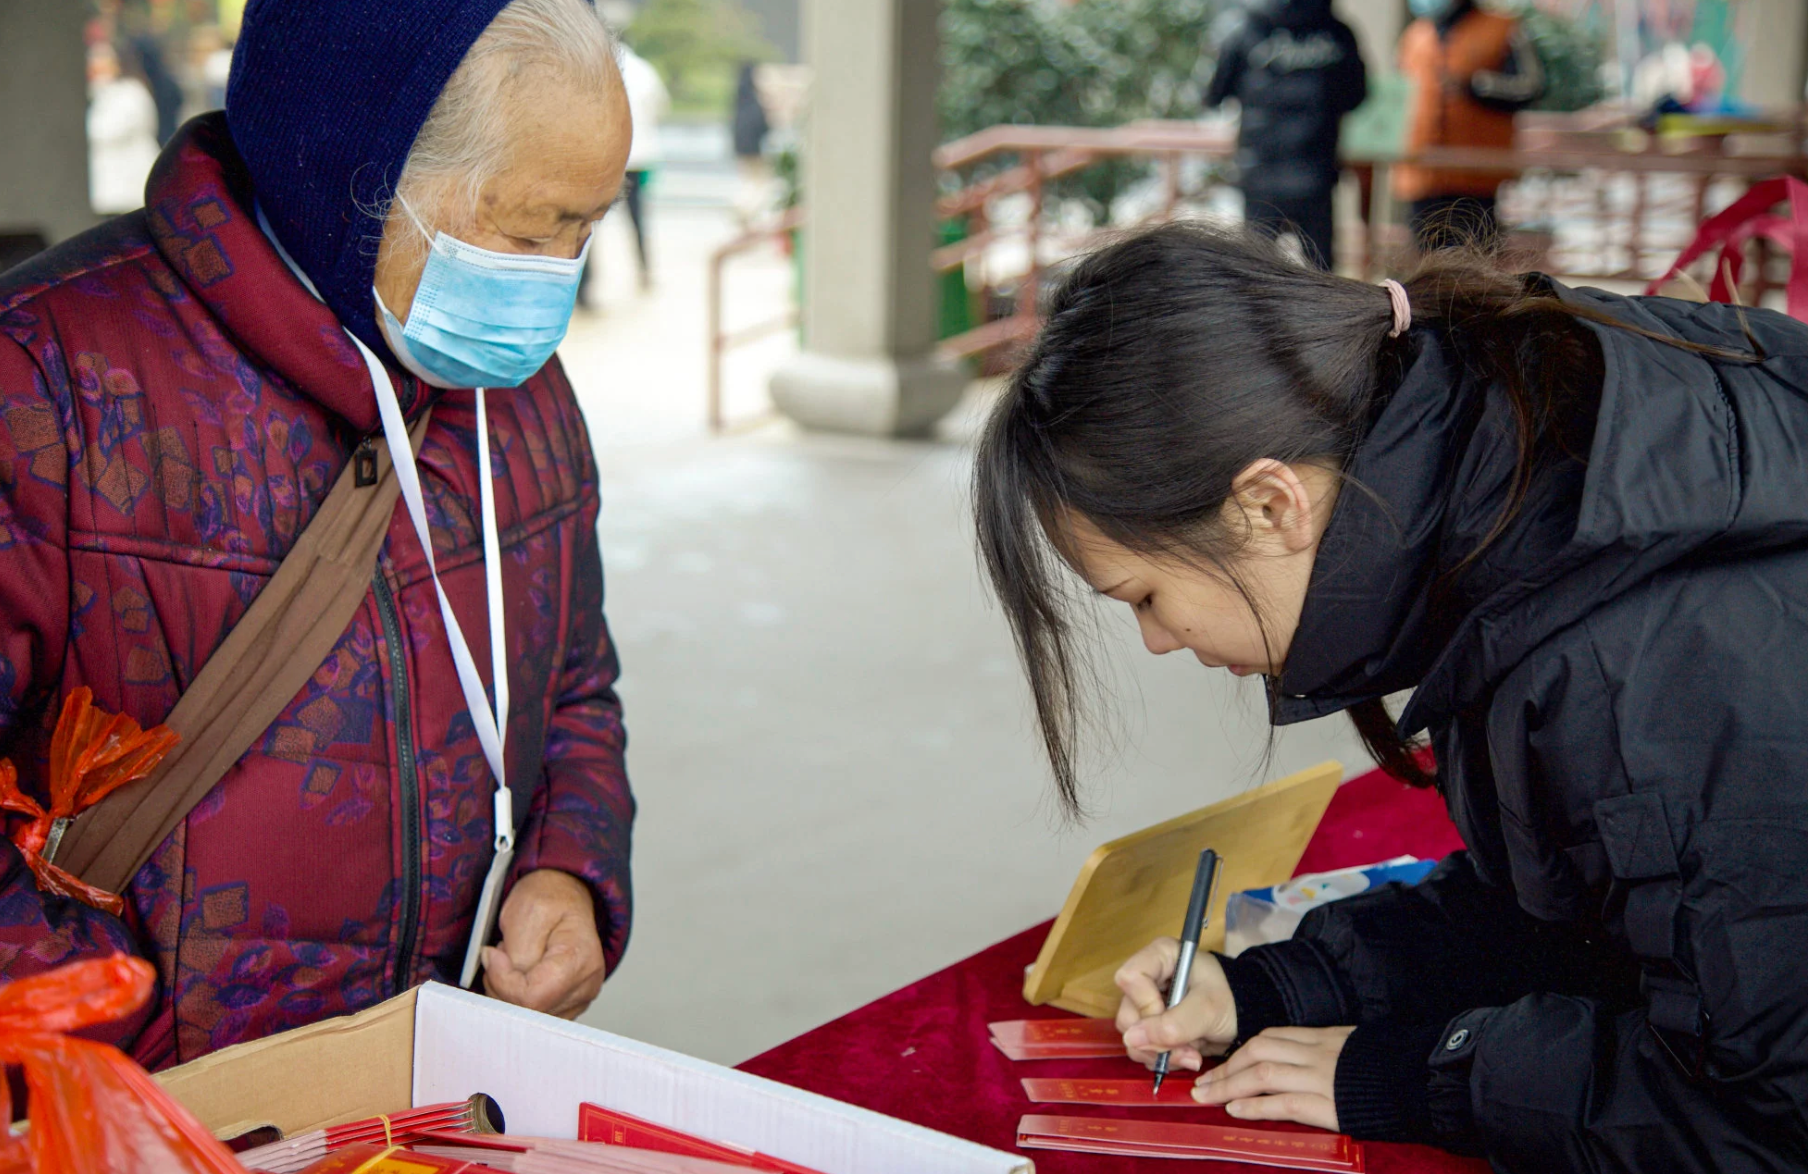 Trung Quốc: Người trẻ kiệt sức, quyết định bỏ việc, ồ ạt kéo đến chùa ở trong vài tháng để tìm 'sự an yên' - Ảnh 2.